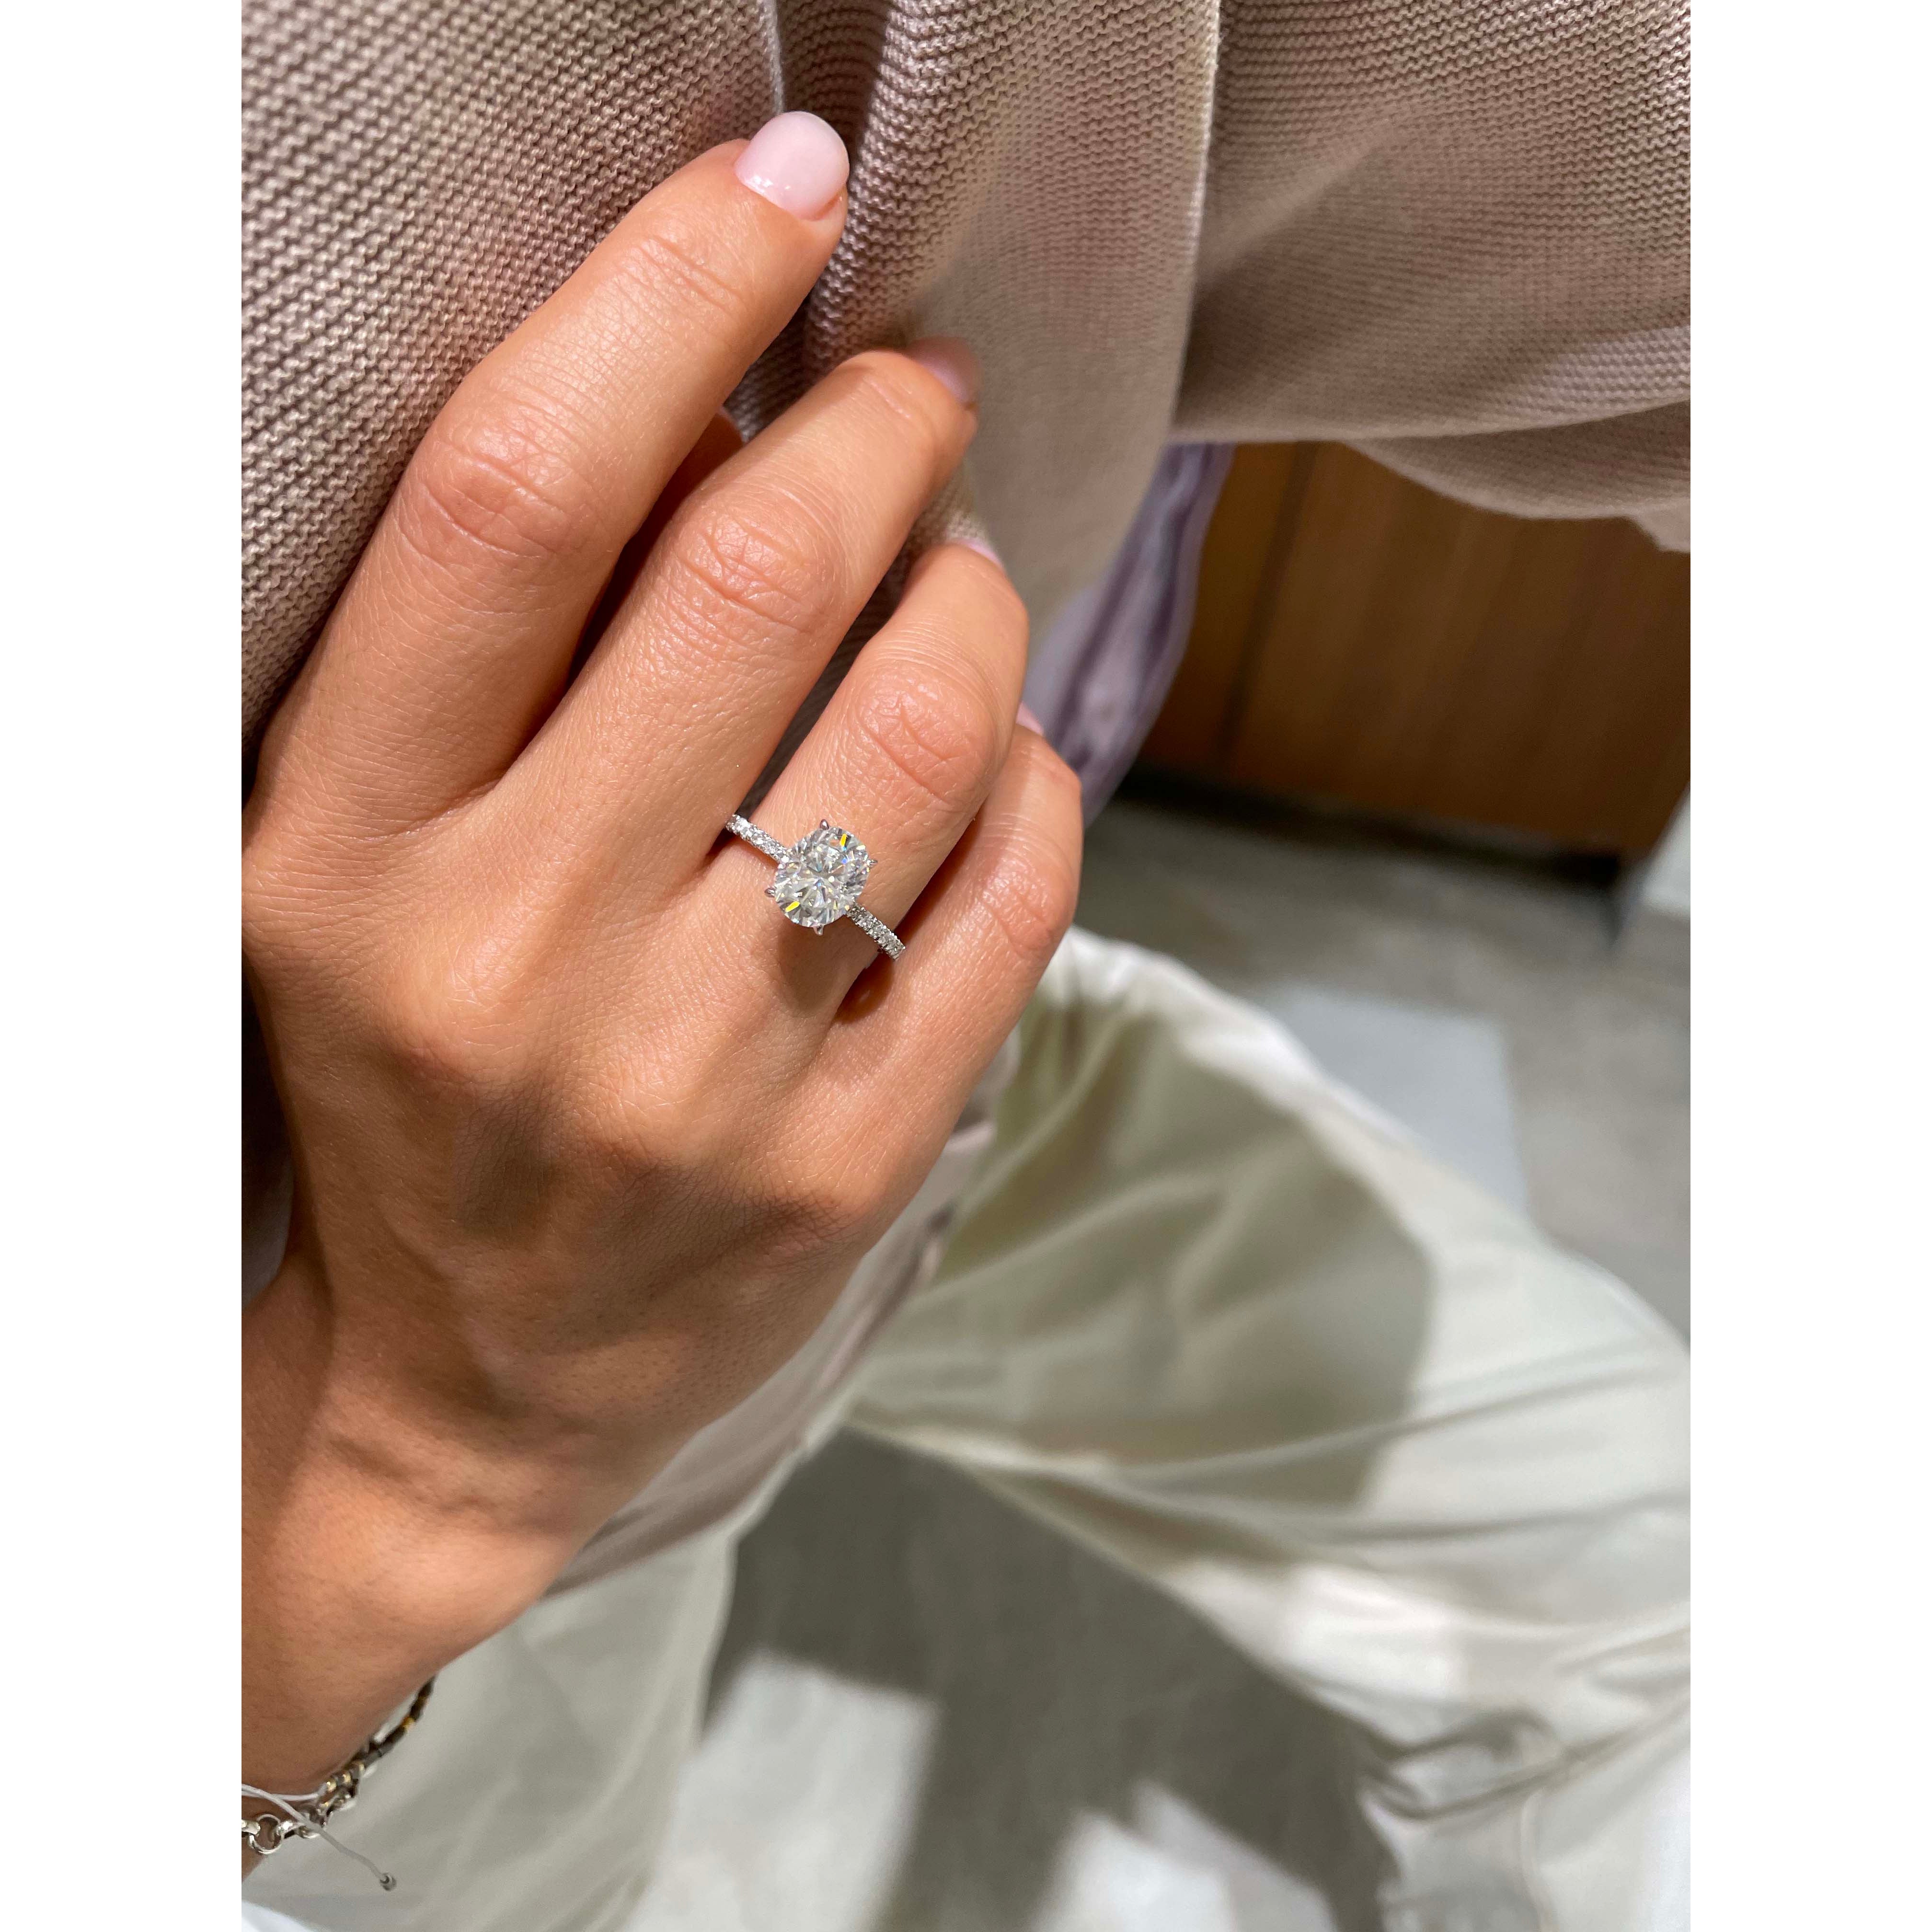 Lucy Moissanite & Diamonds Ring   (2.5 Carat) -Platinum